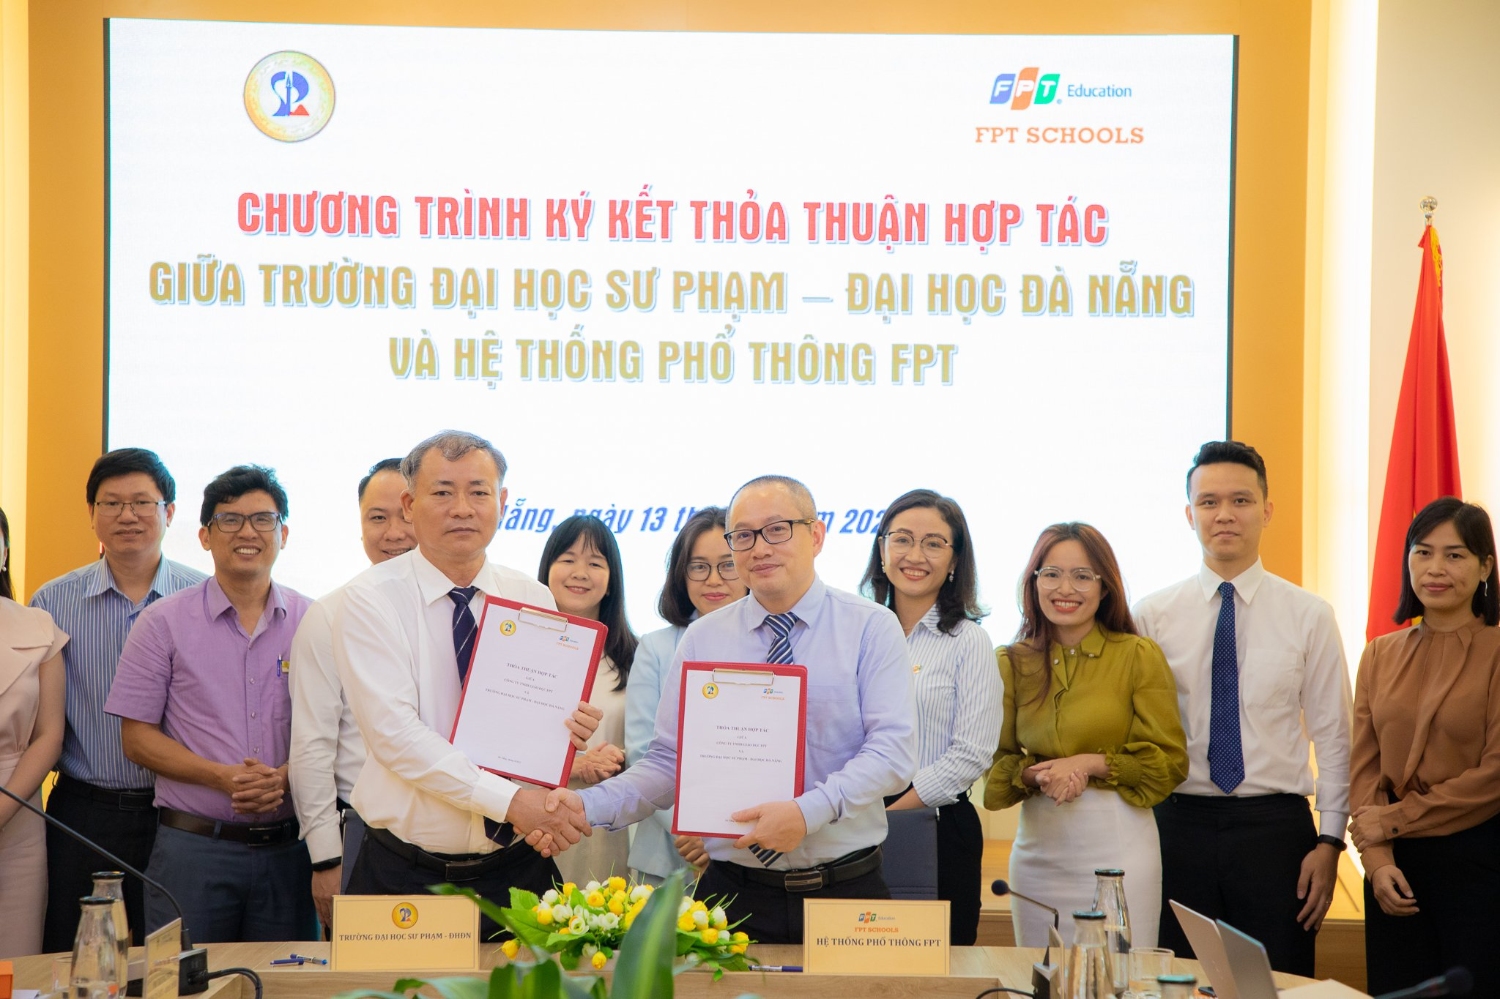 Trường Đại học Sư phạm - Đại học Đà Nẵng và Hệ thống Phổ thông FPT ký kết thỏa thuận hợp tác